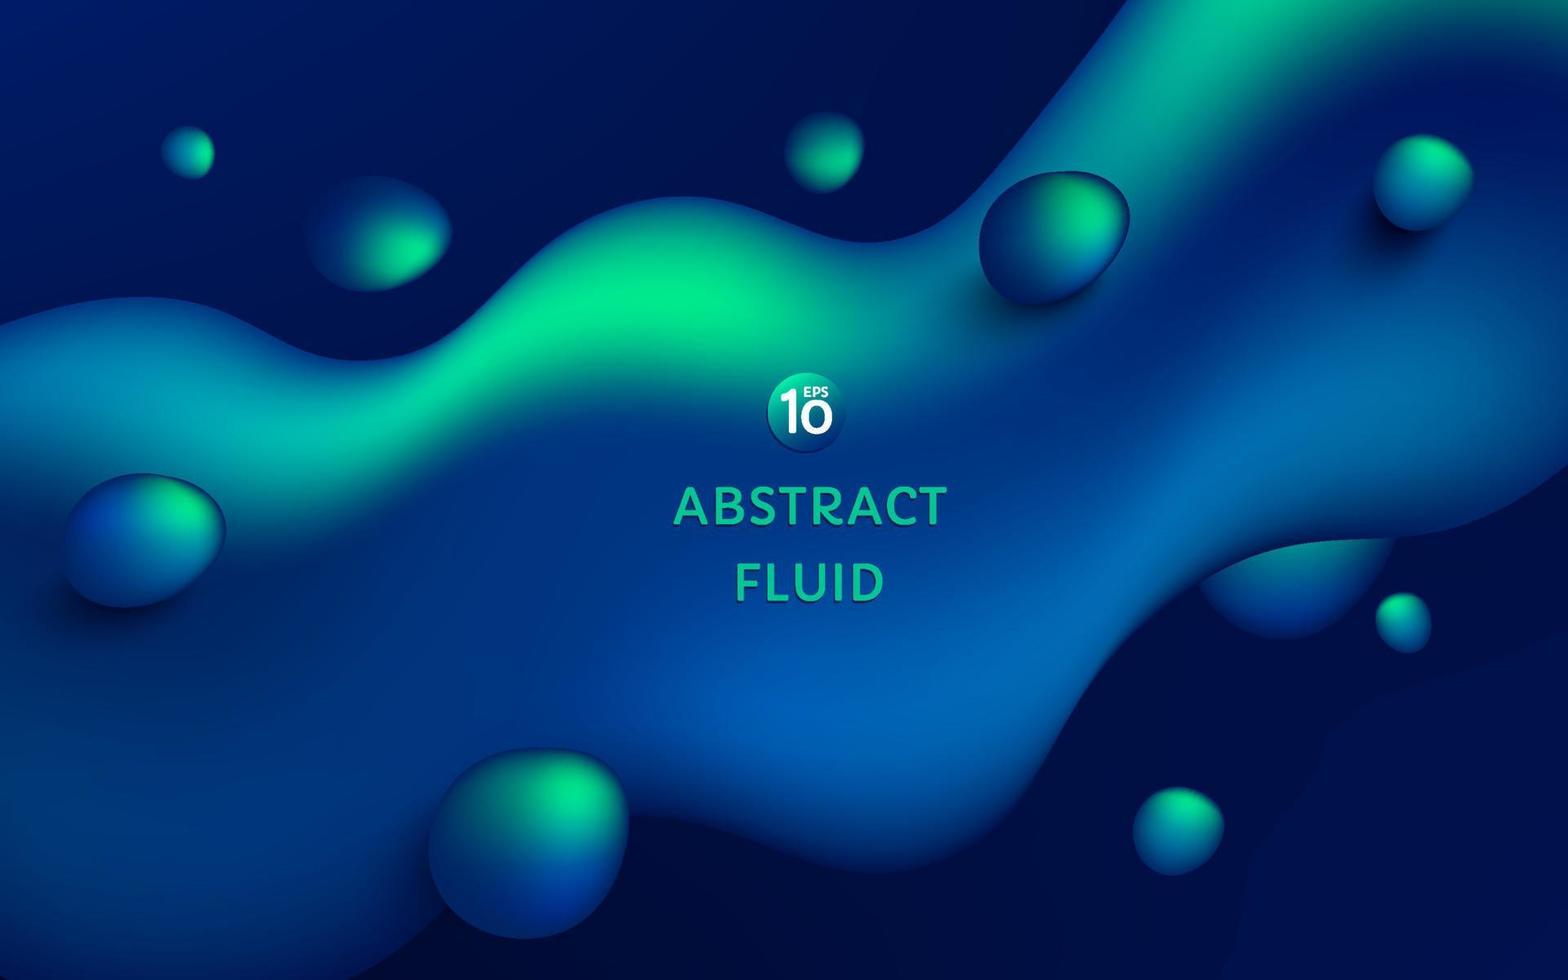 astratto 3d neon verde blu colore fluido forma liquida su sfondo blu scuro con spazio di copia. moderno concetto futuristico. vettore eps10.